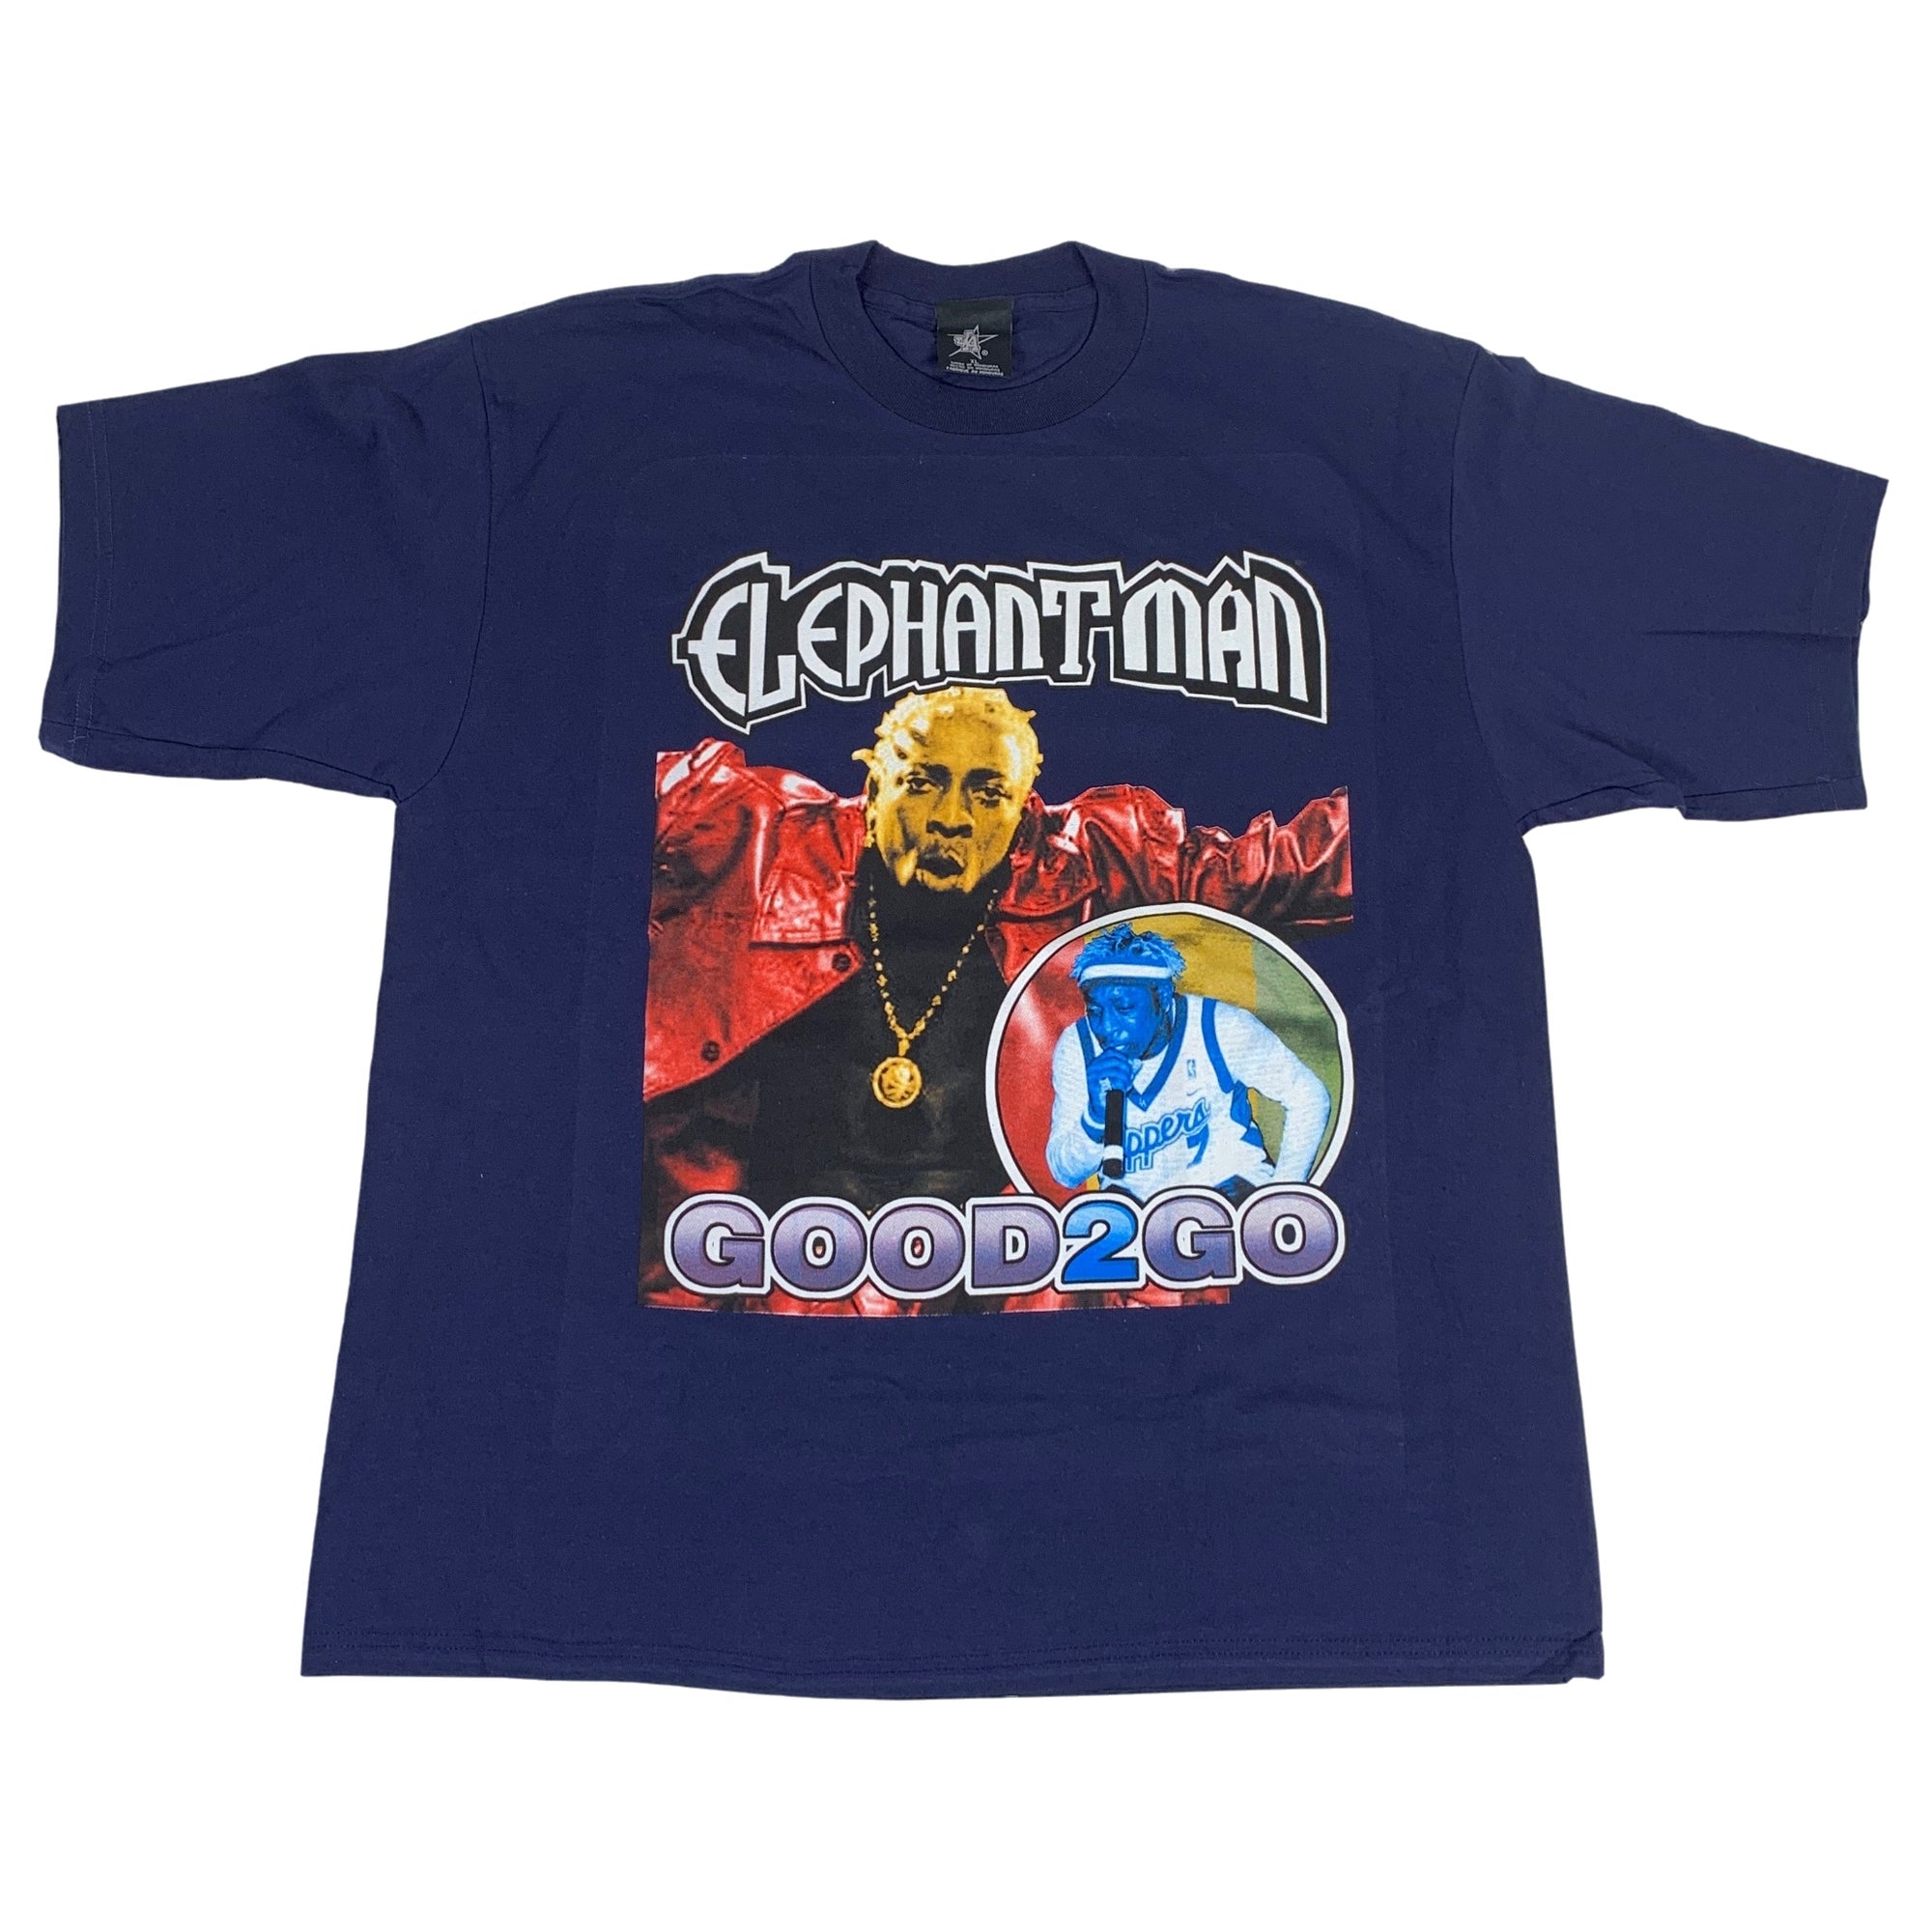 Vintage Elephant Man "Good 2 Go" T-shirt - jointcustodydc